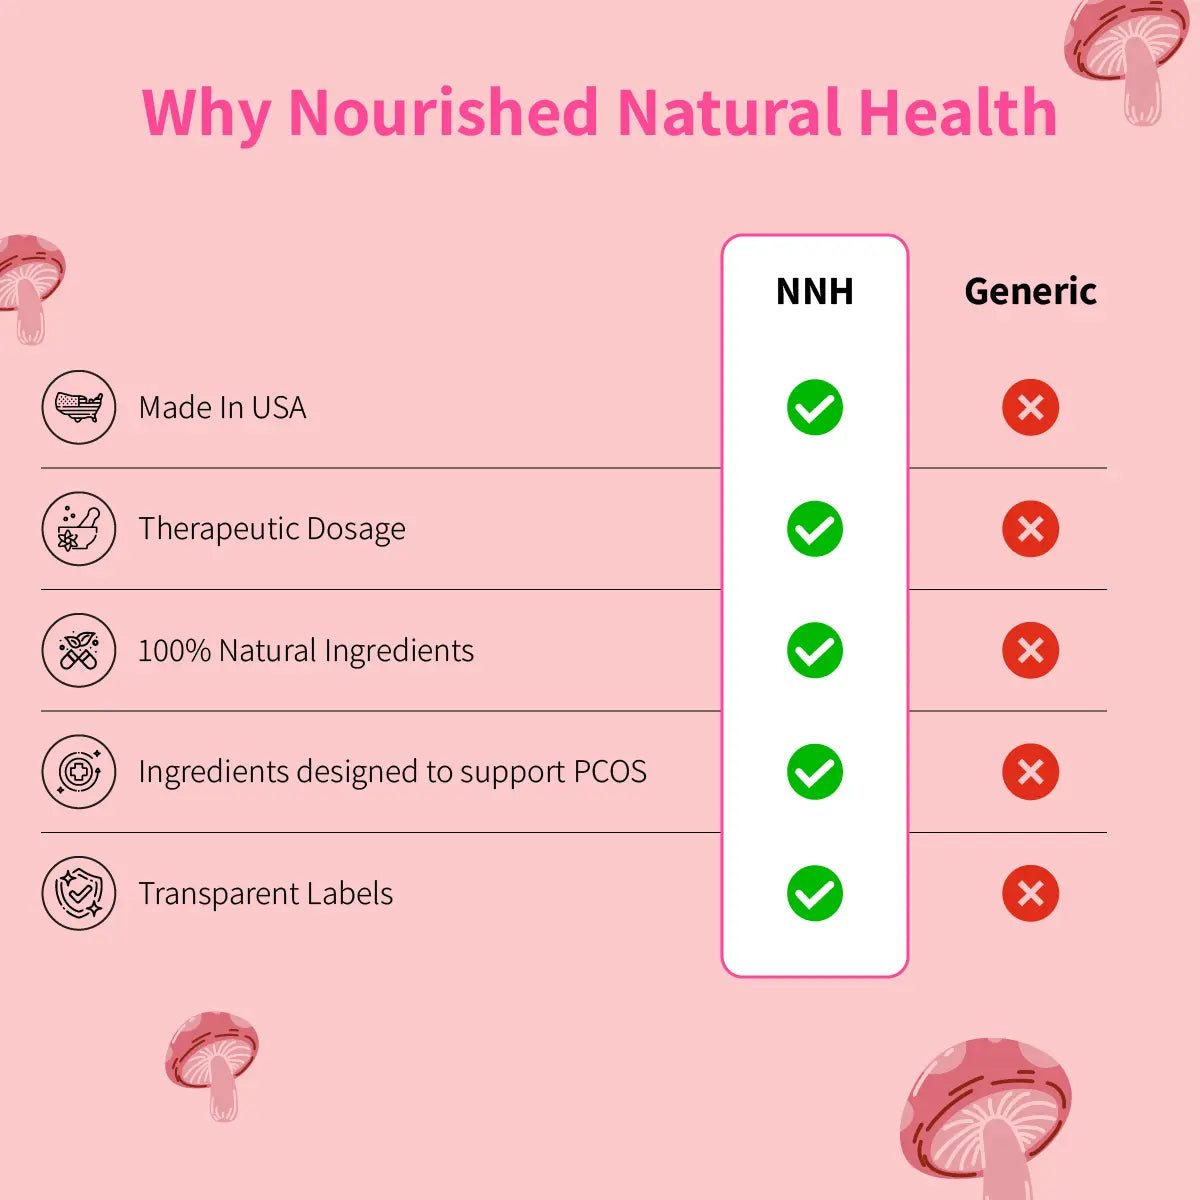 Nourished Androgen Blocker Plus For PCOS - #1 Best Seller - Nourished Natural Health